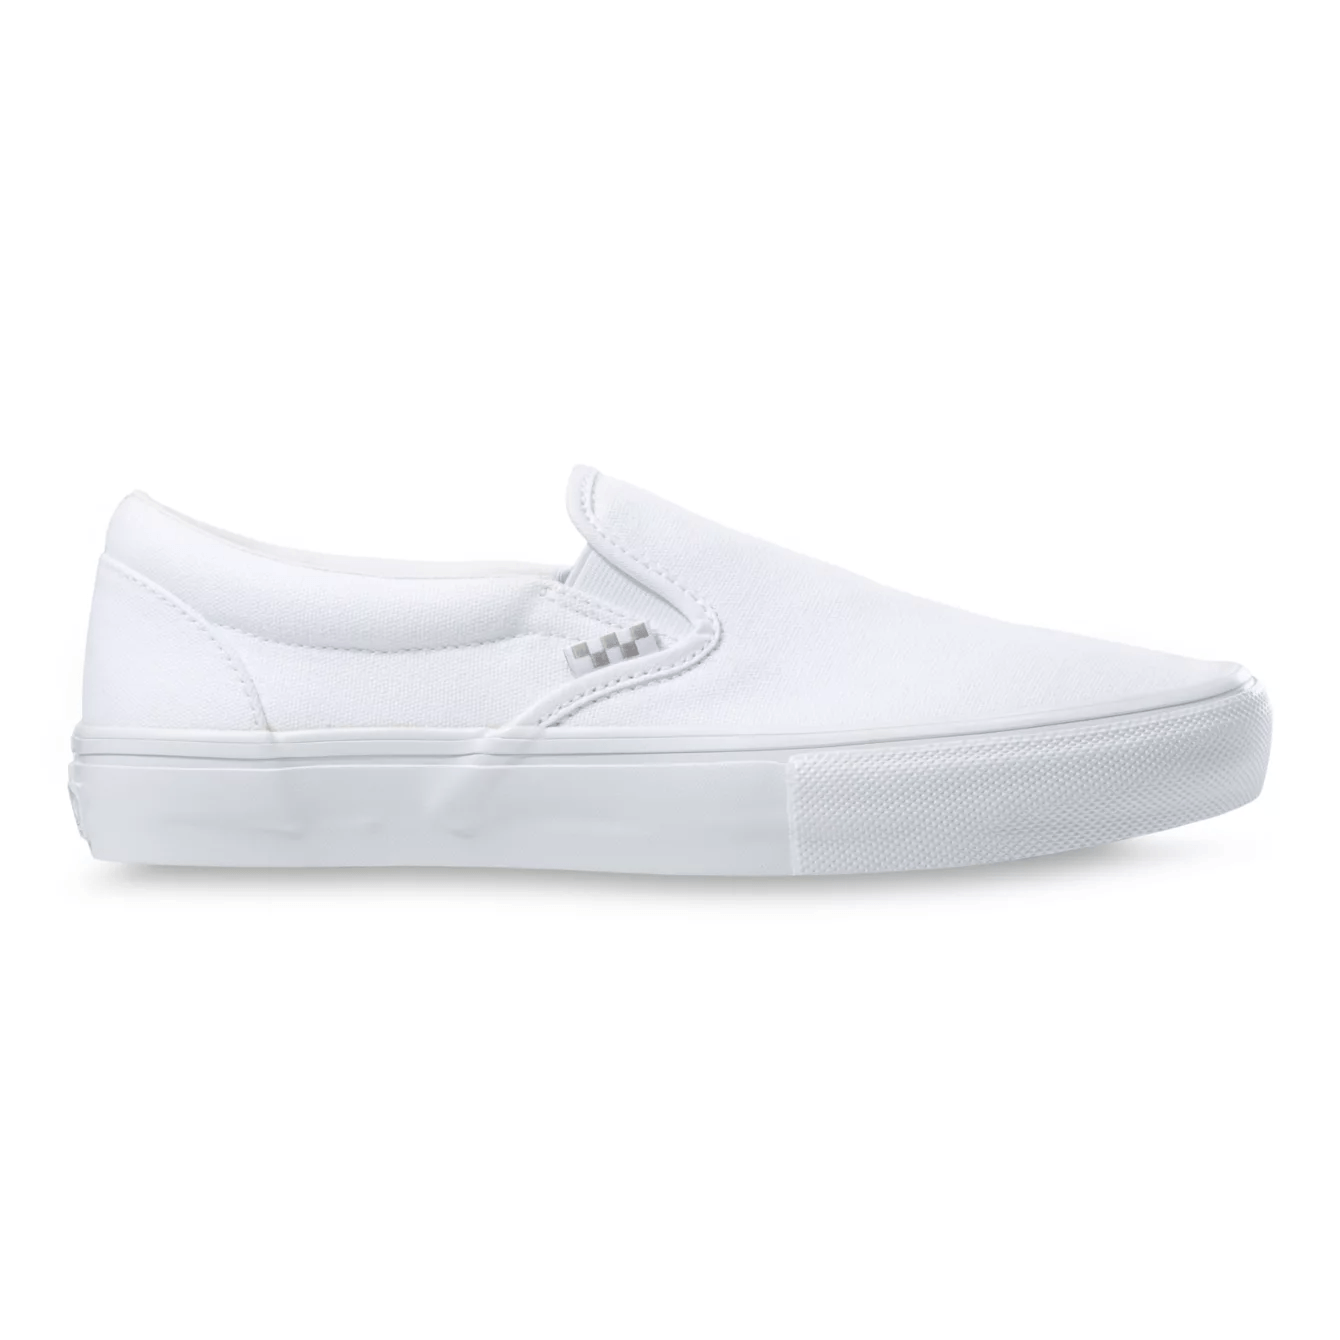 VANS Skate Slip-On Shoes True White Men's Skate Shoes Vans 8 